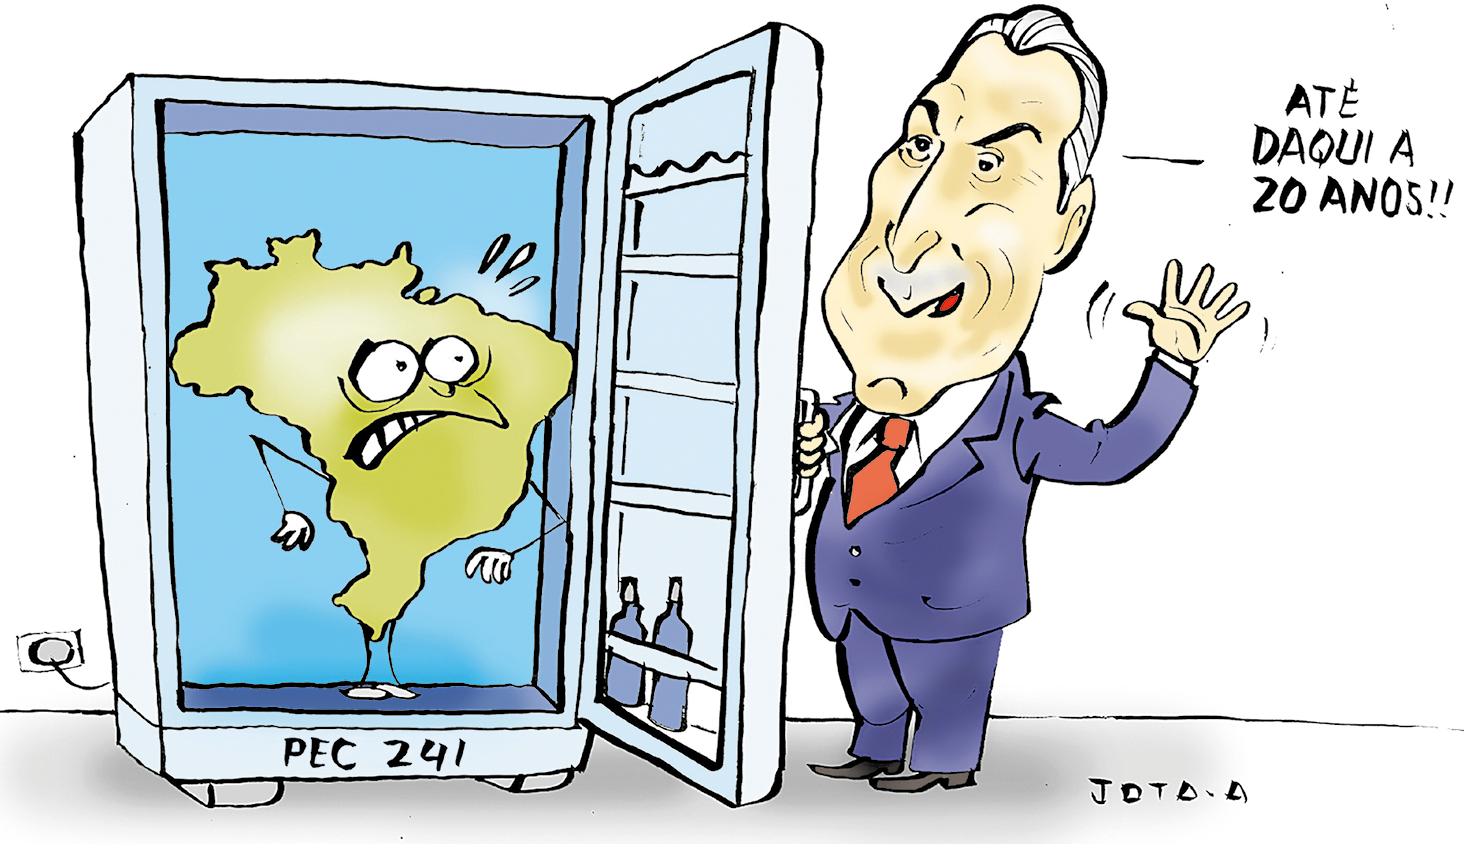 Charge. Dentro de uma geladeira denominada PEC 241, o mapa do Brasil assustado. Um homem de terno segurando a porta diz: ATÉ DAQUI A 20 ANOS!!